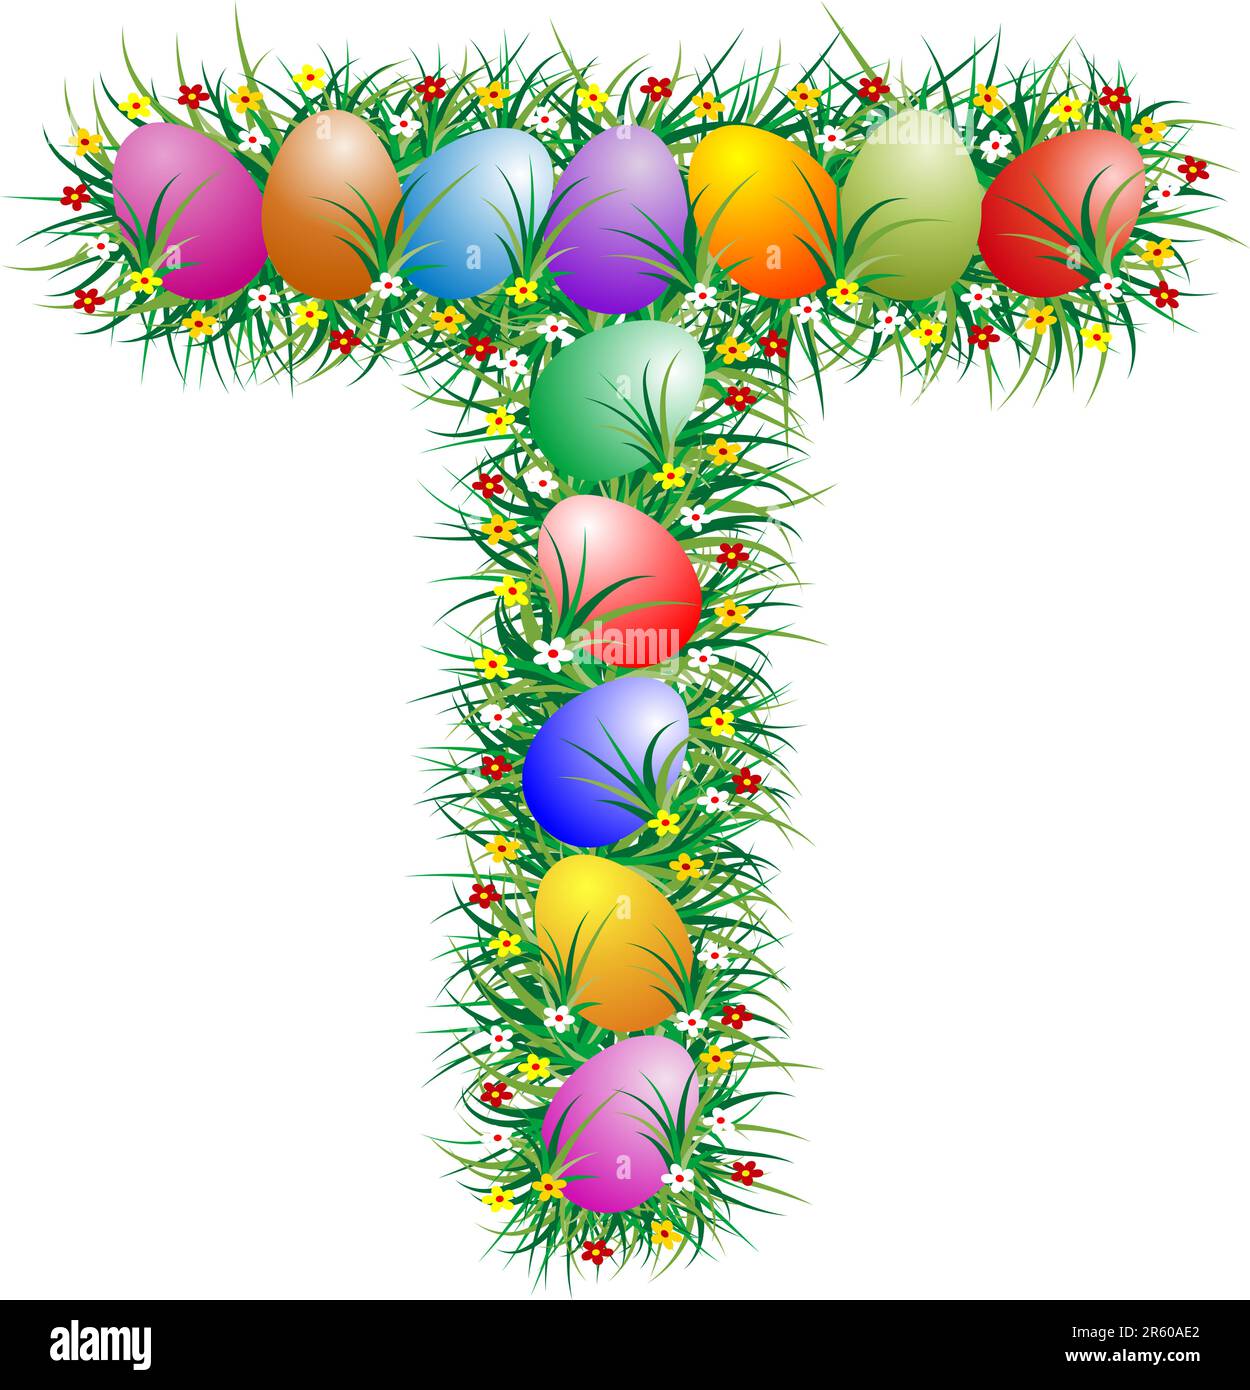 Lettre de Pâques avec des œufs cachés dans l'herbe Illustration de Vecteur